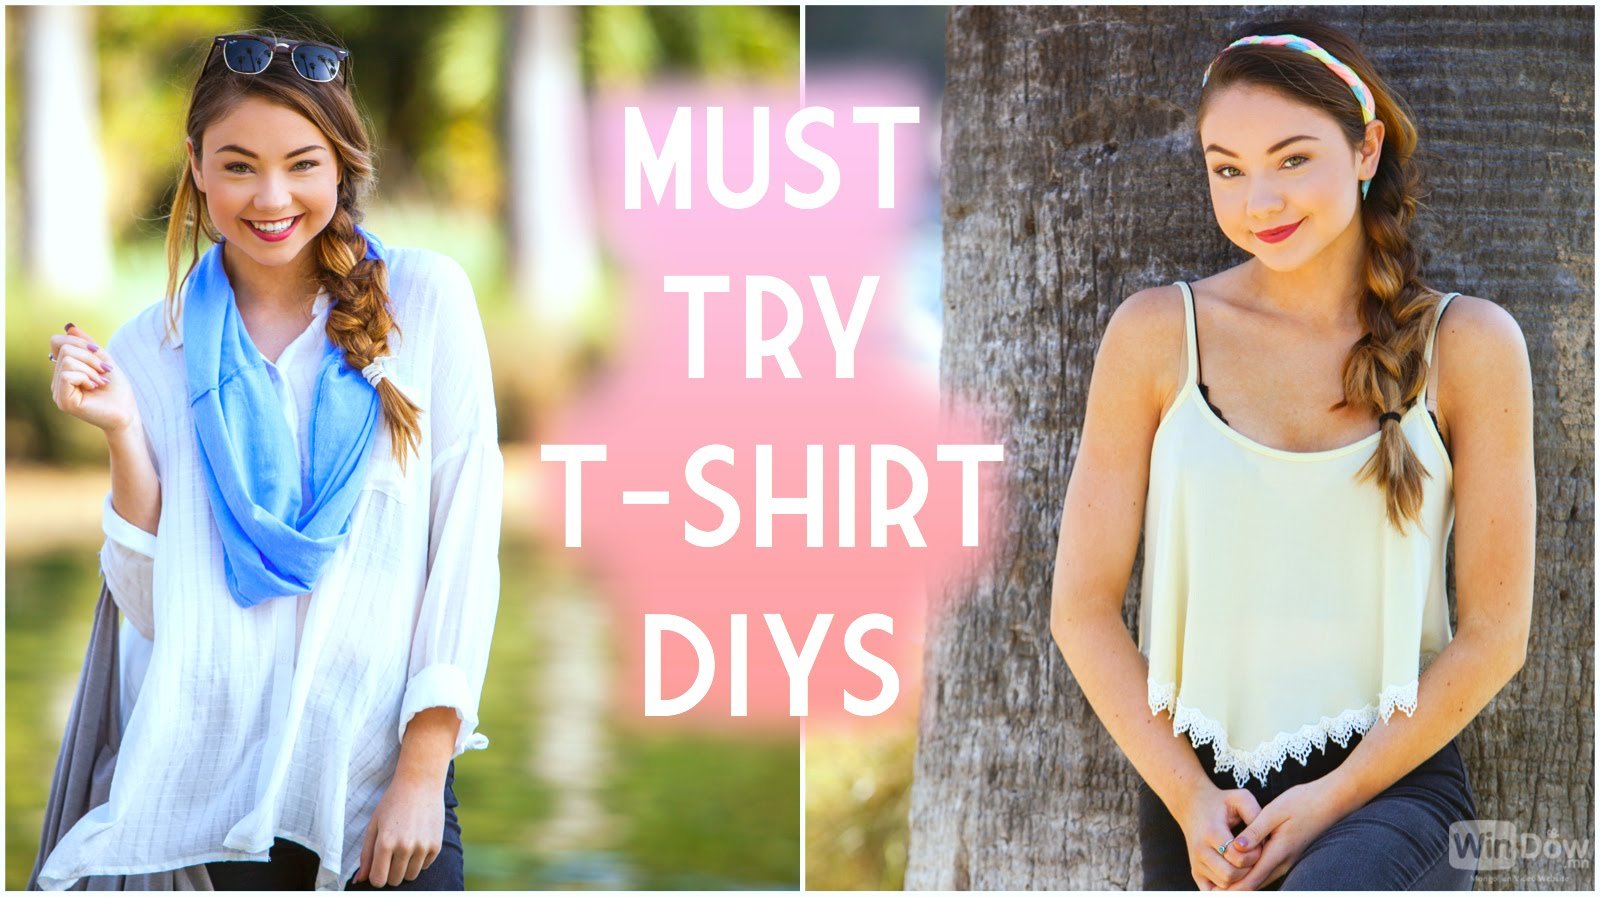 DIY-CLOTHES new 2015:Хуучин хувцсаа шинэчилж илүү загварлаг болгоцгооё охидоо!